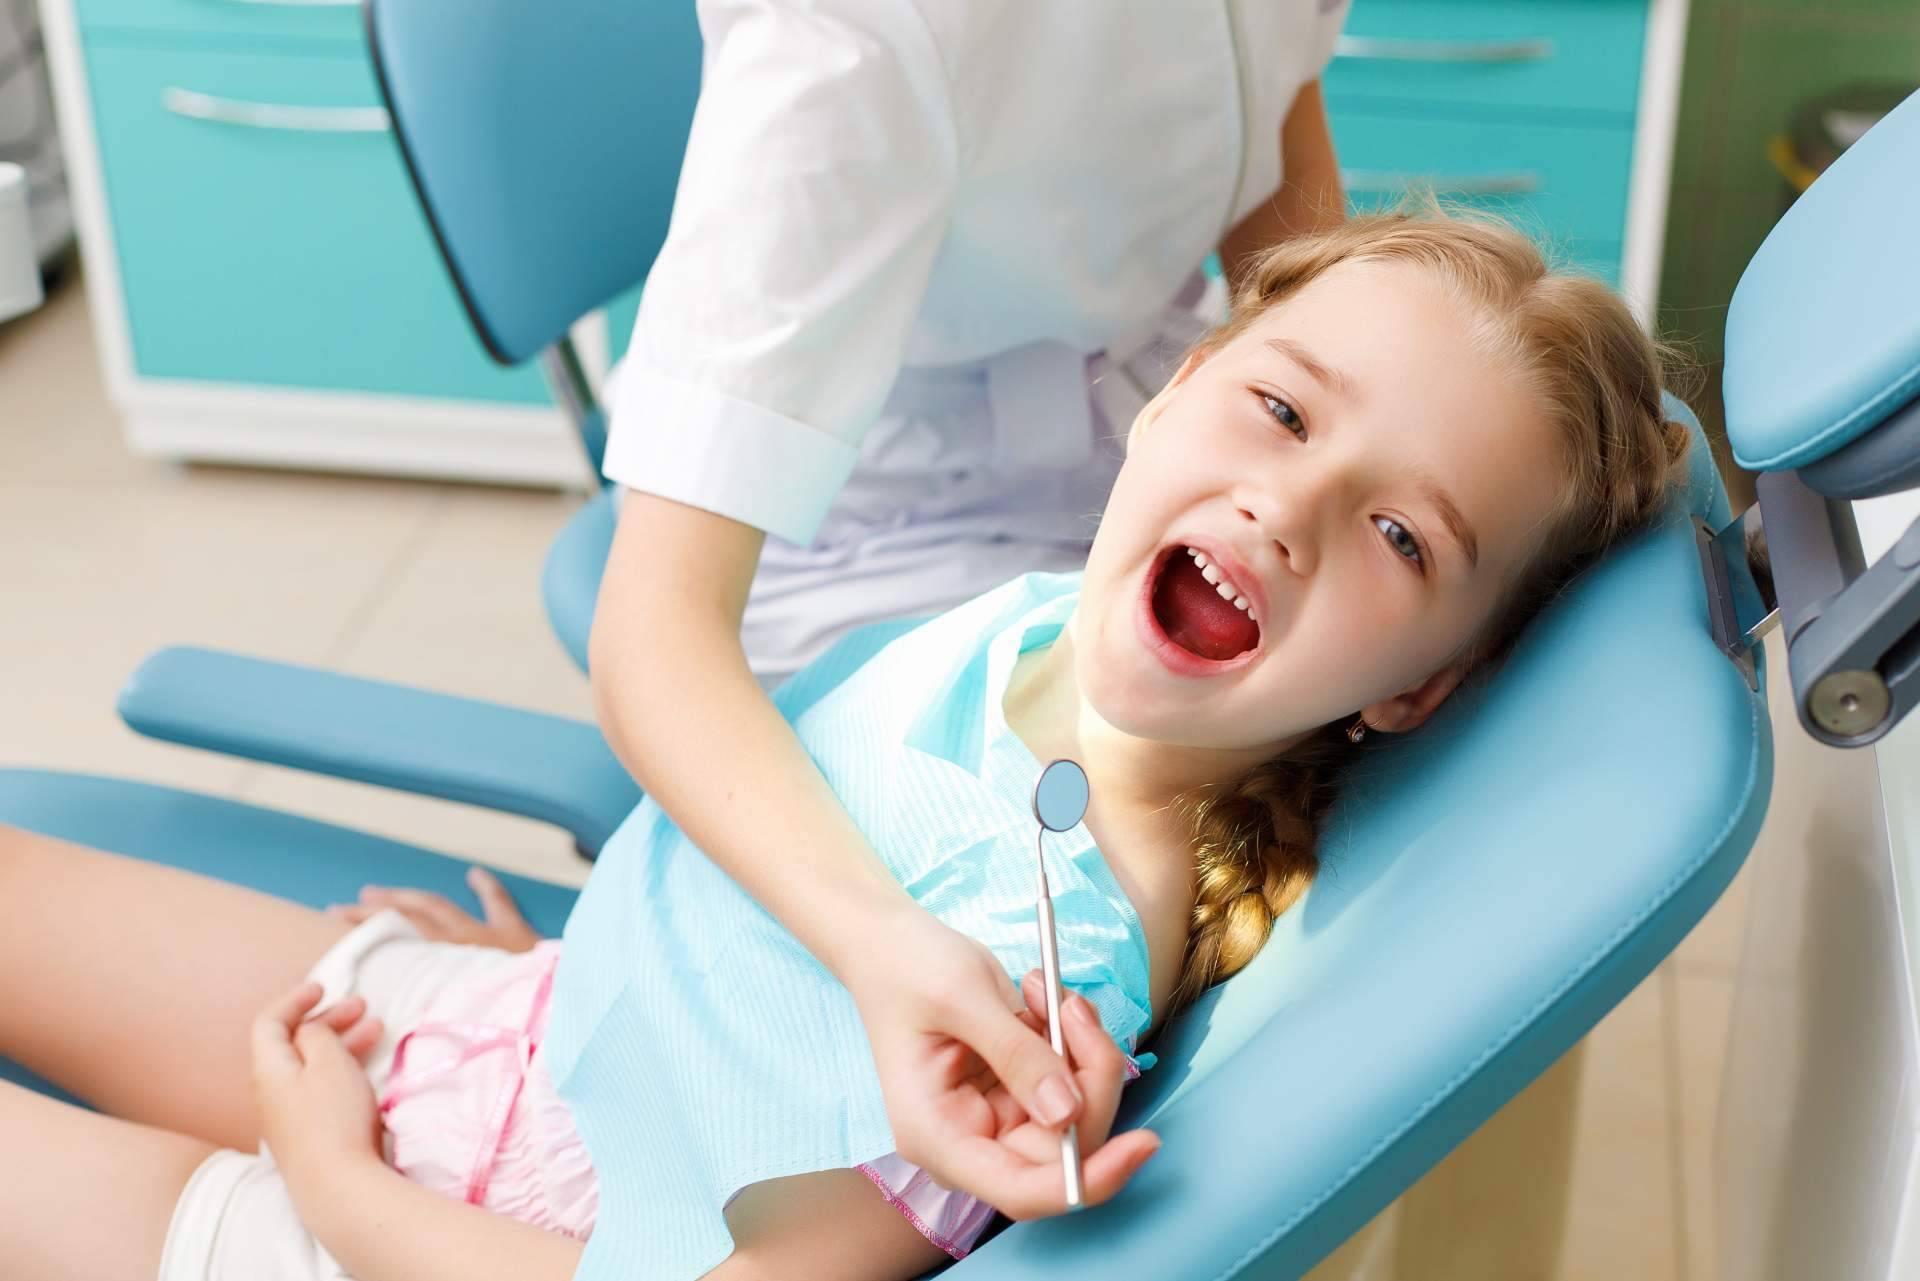 ¿Cuándo visitar al dentista?, odontopediatría de la mano de Implant Clinics